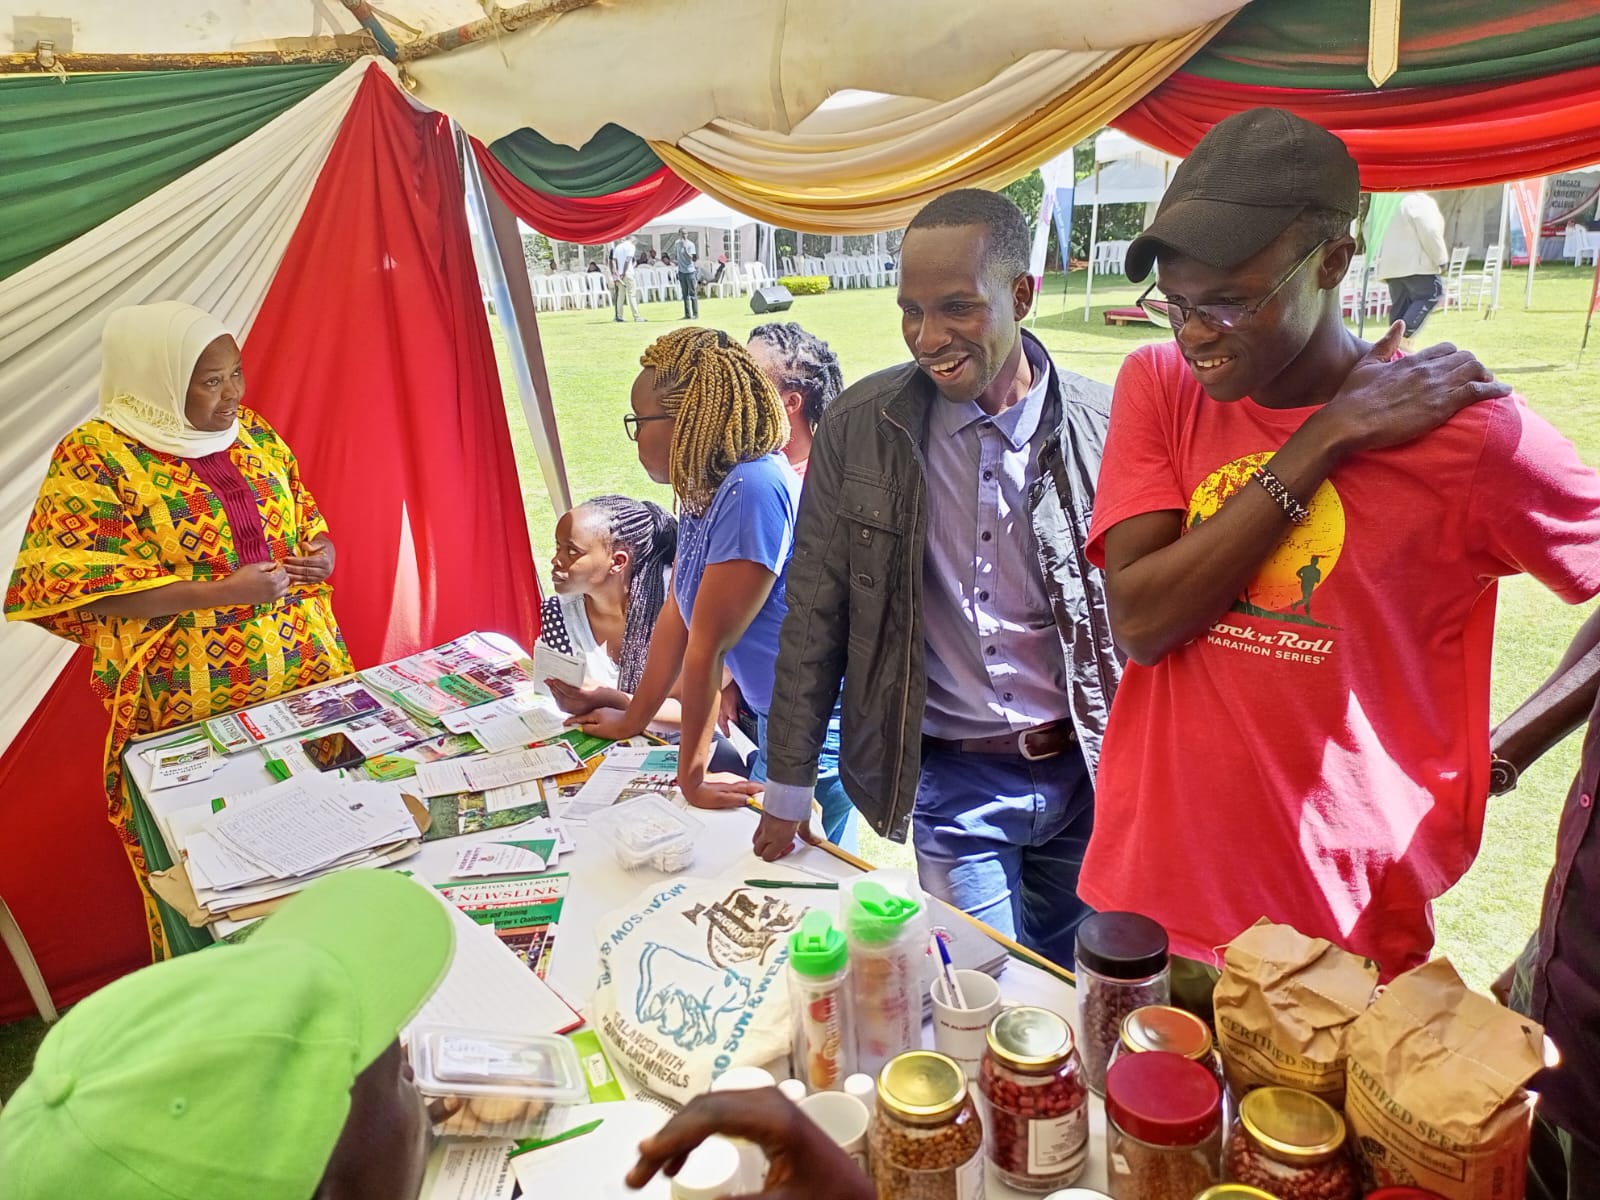 Egerton Features at the 2022 Eldoret Career Fair